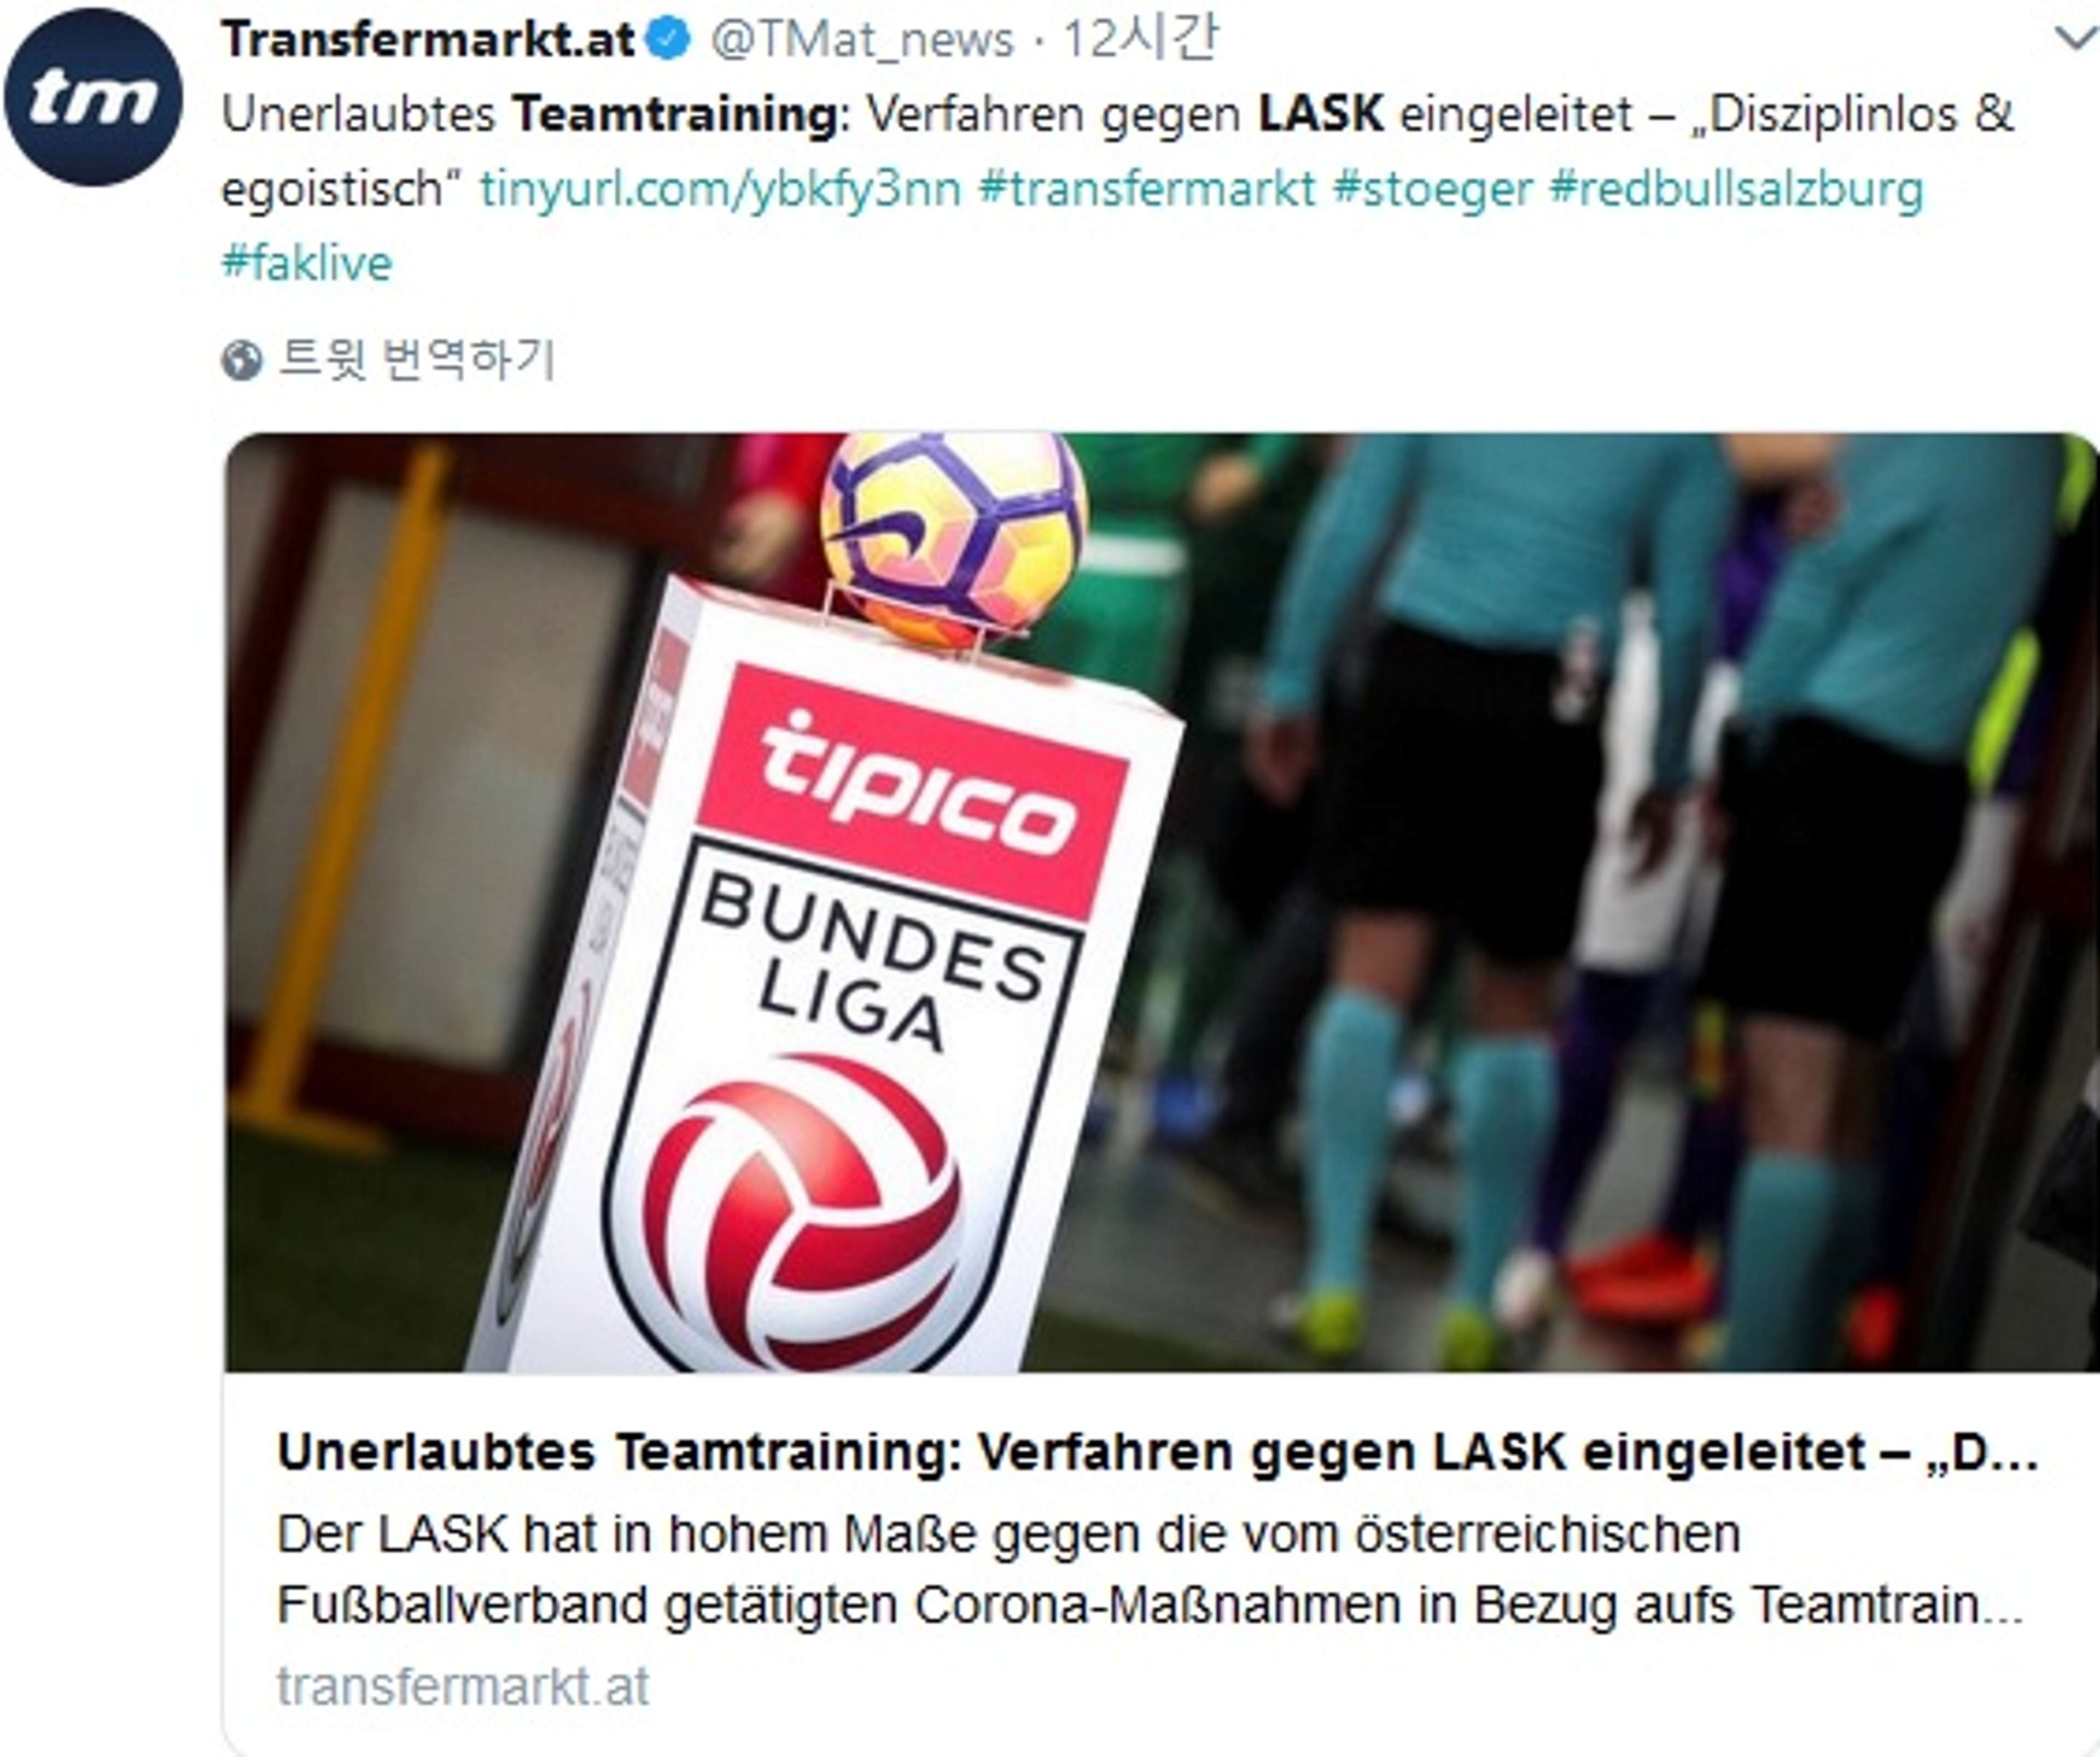 Austria Bundesliga